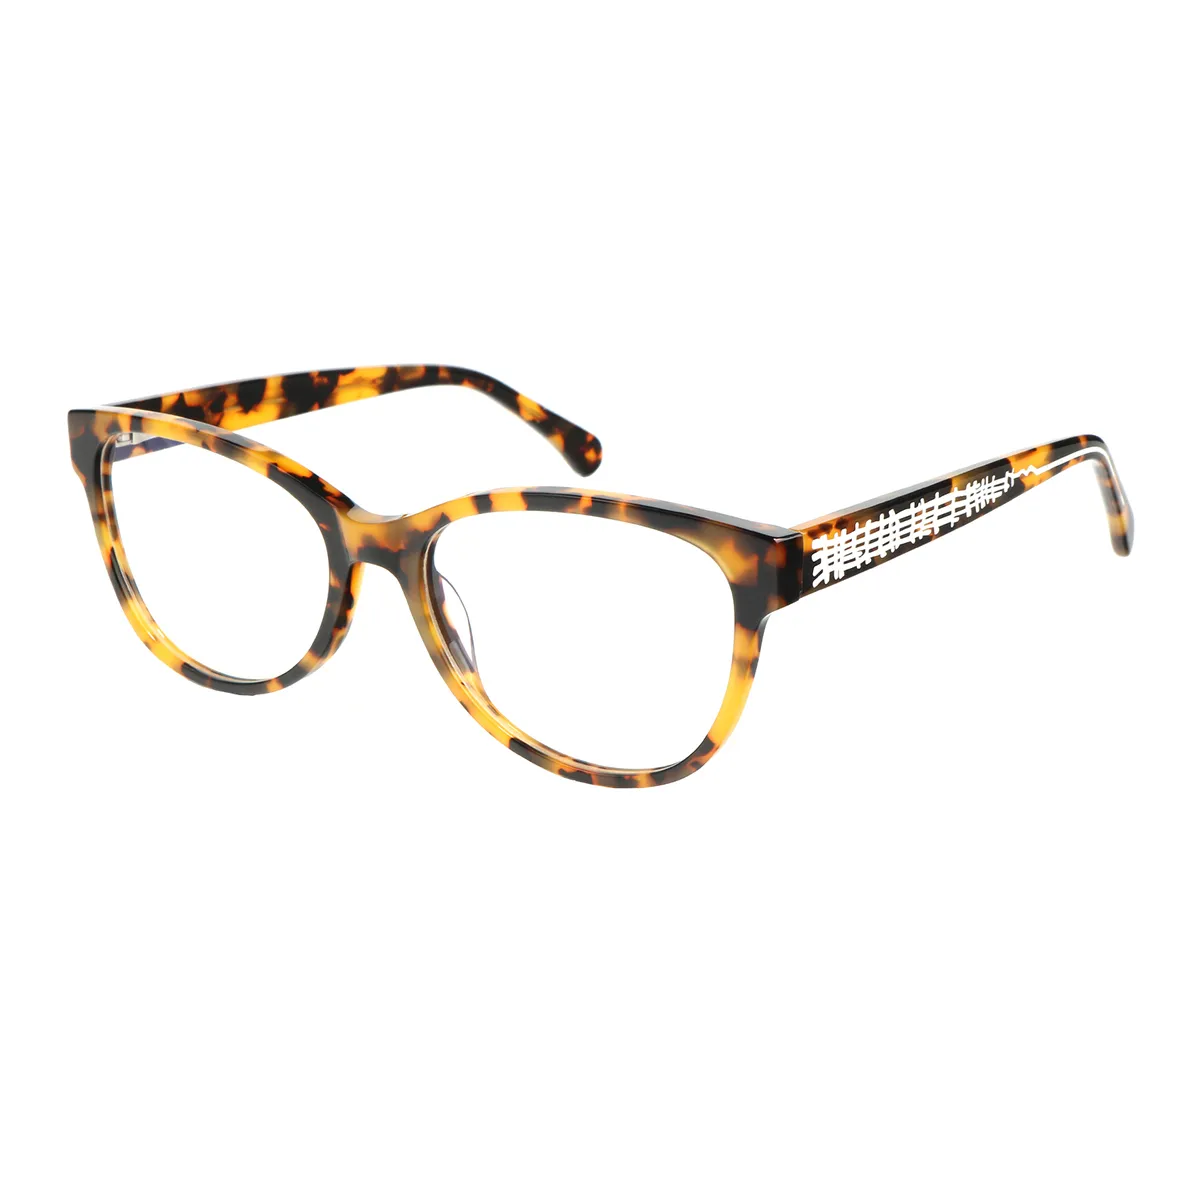 Ealex - Cat-eye Tortoiseshell Glasses for Women - EFE